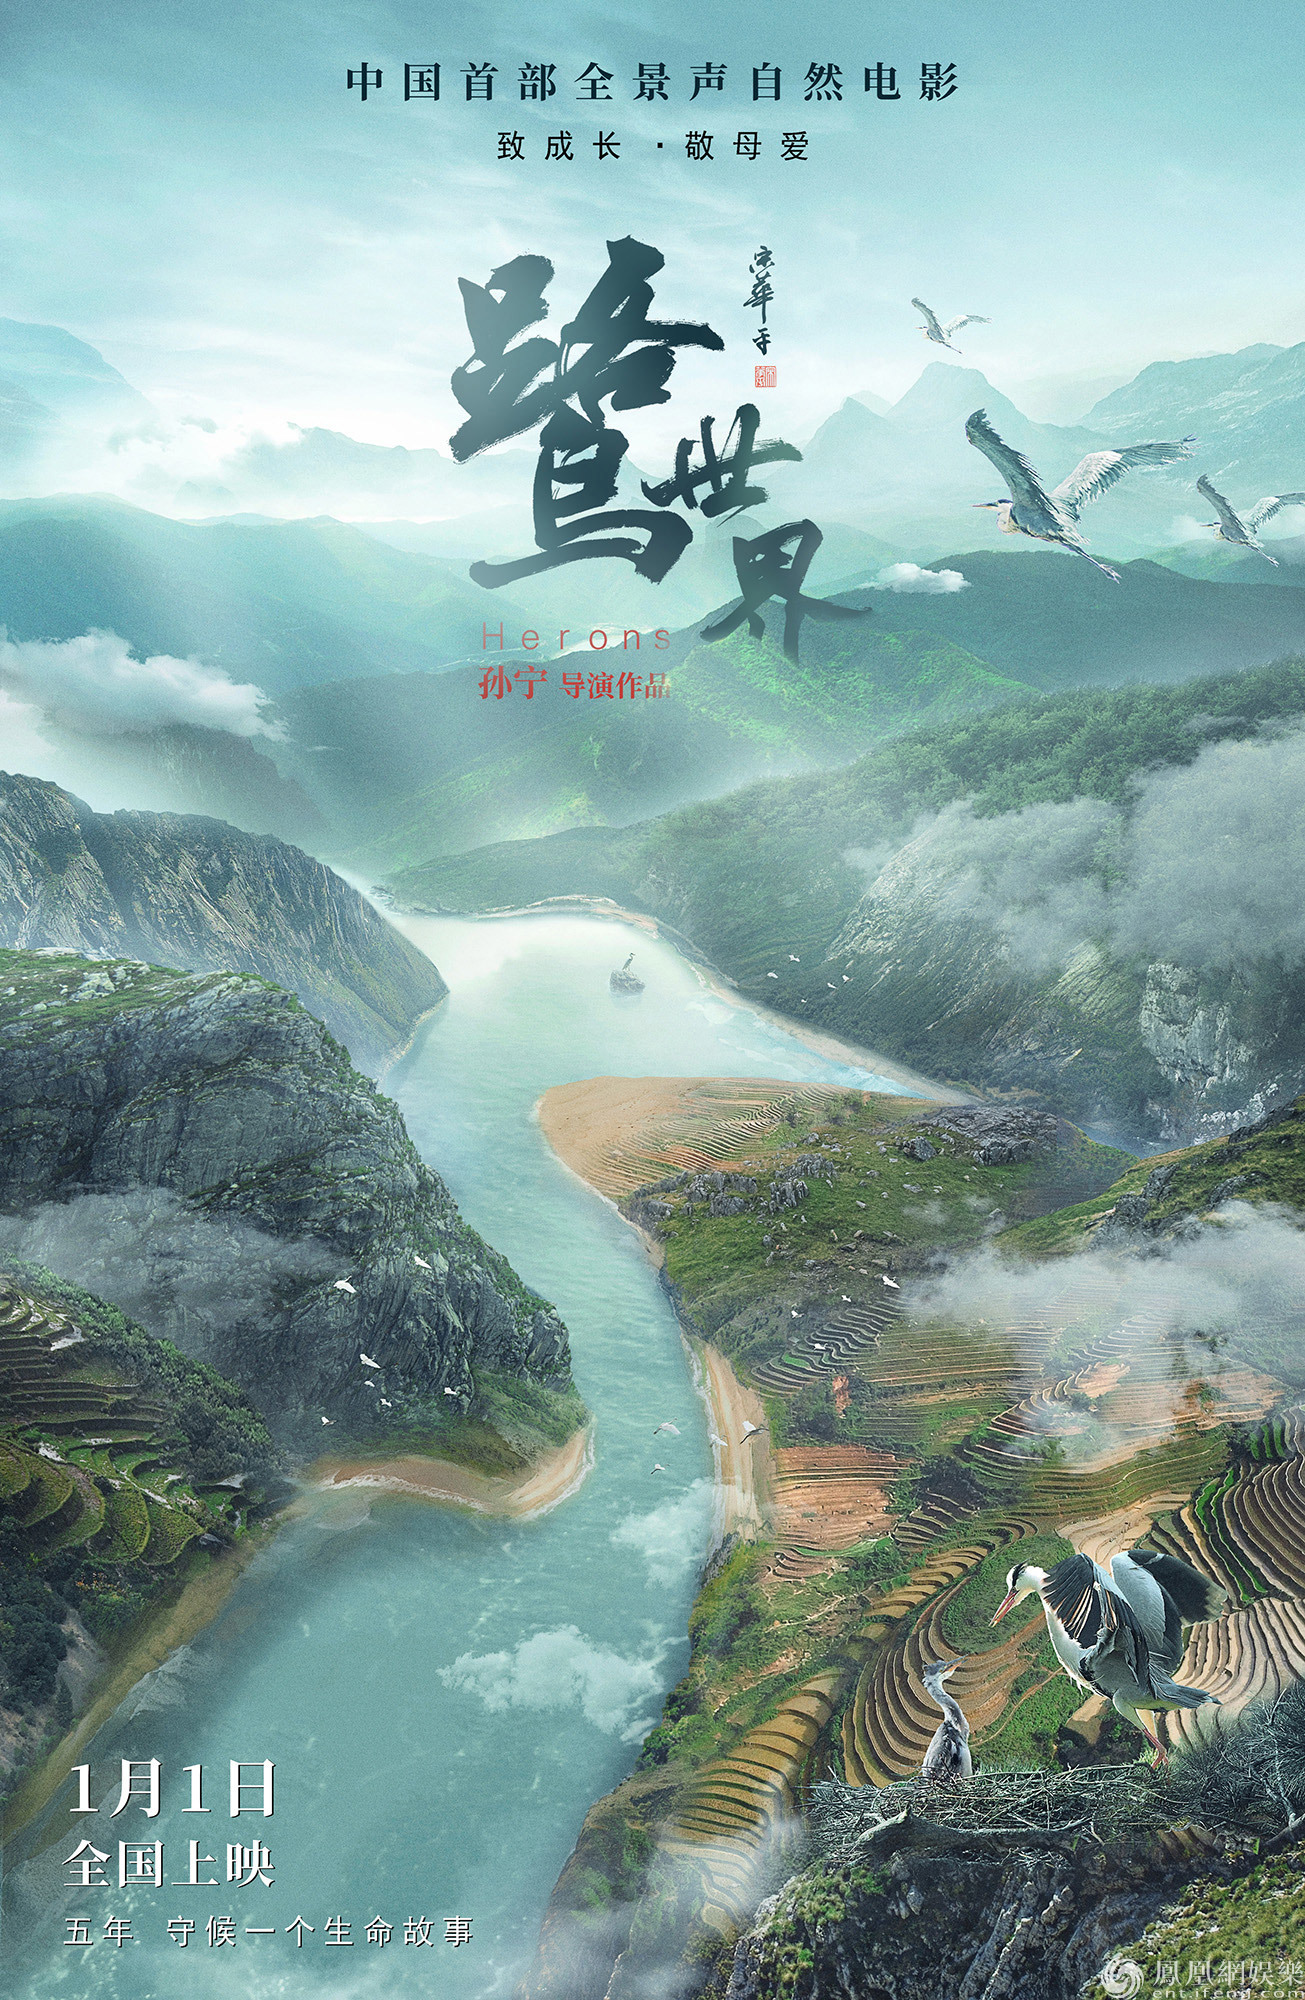 《鹭世界》郑州首映发山河版海报 五年守候值得期待